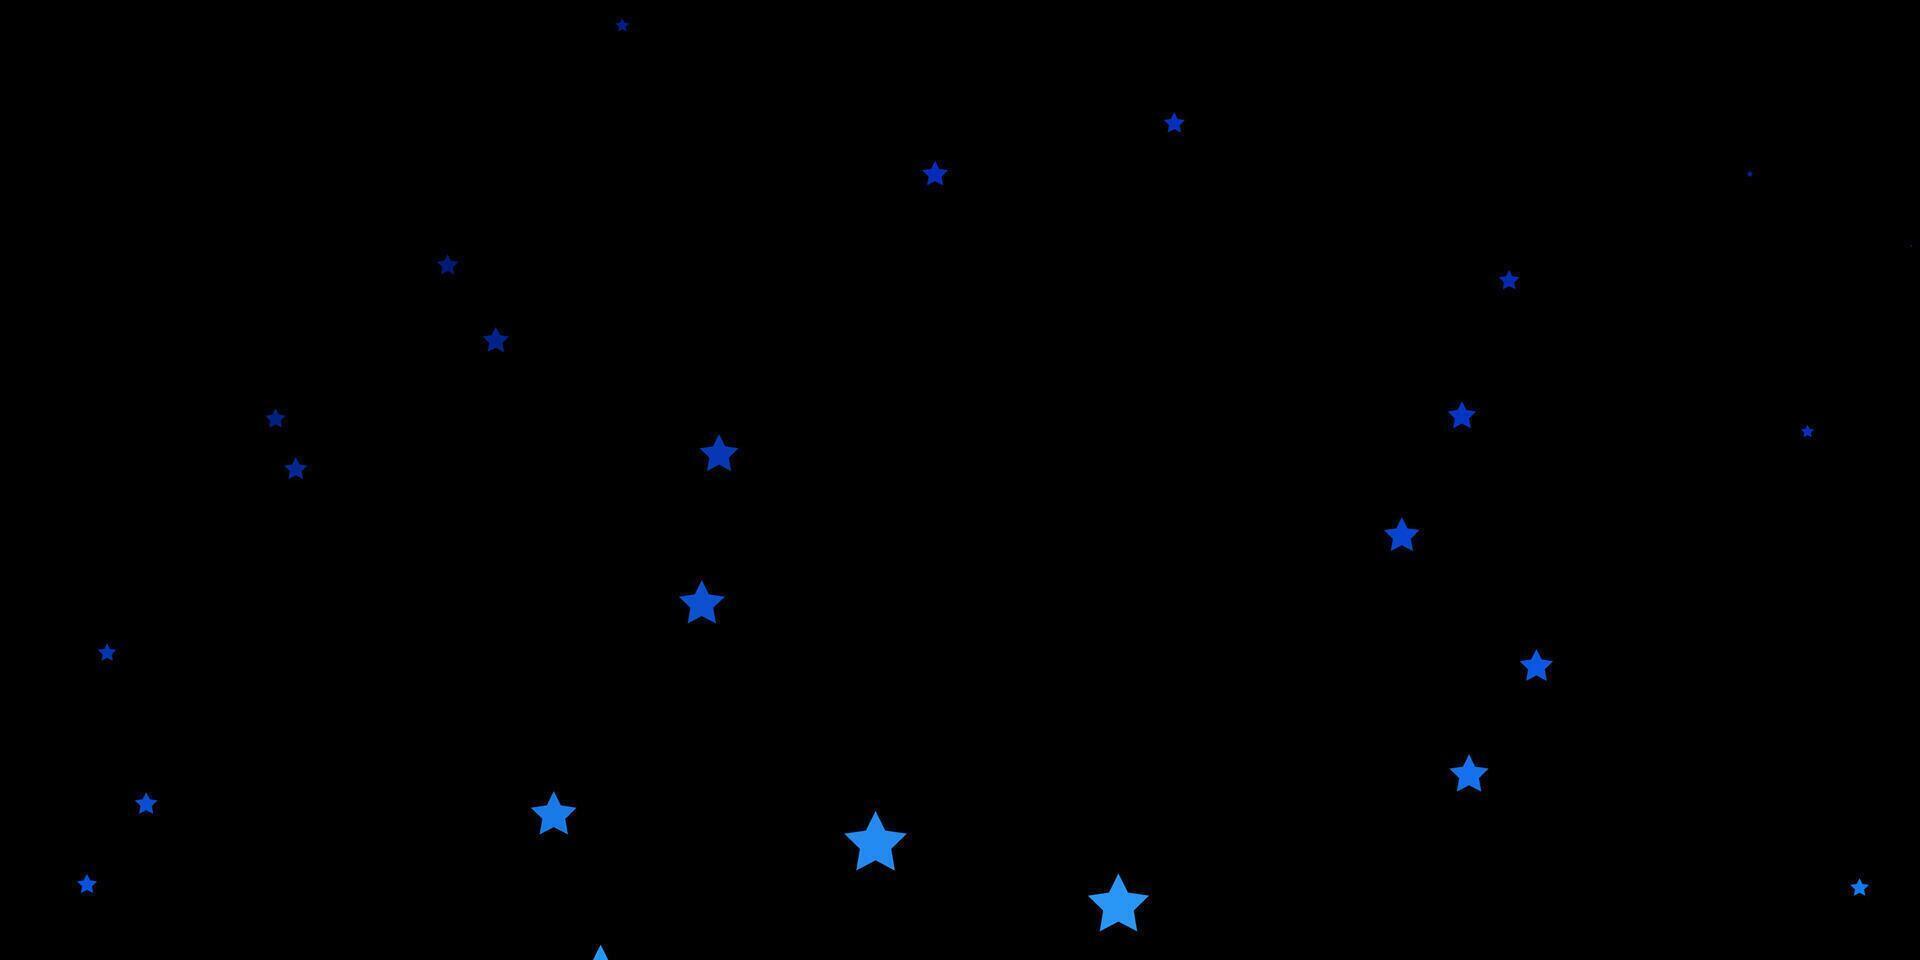 trama vettoriale blu scuro con bellissime stelle.